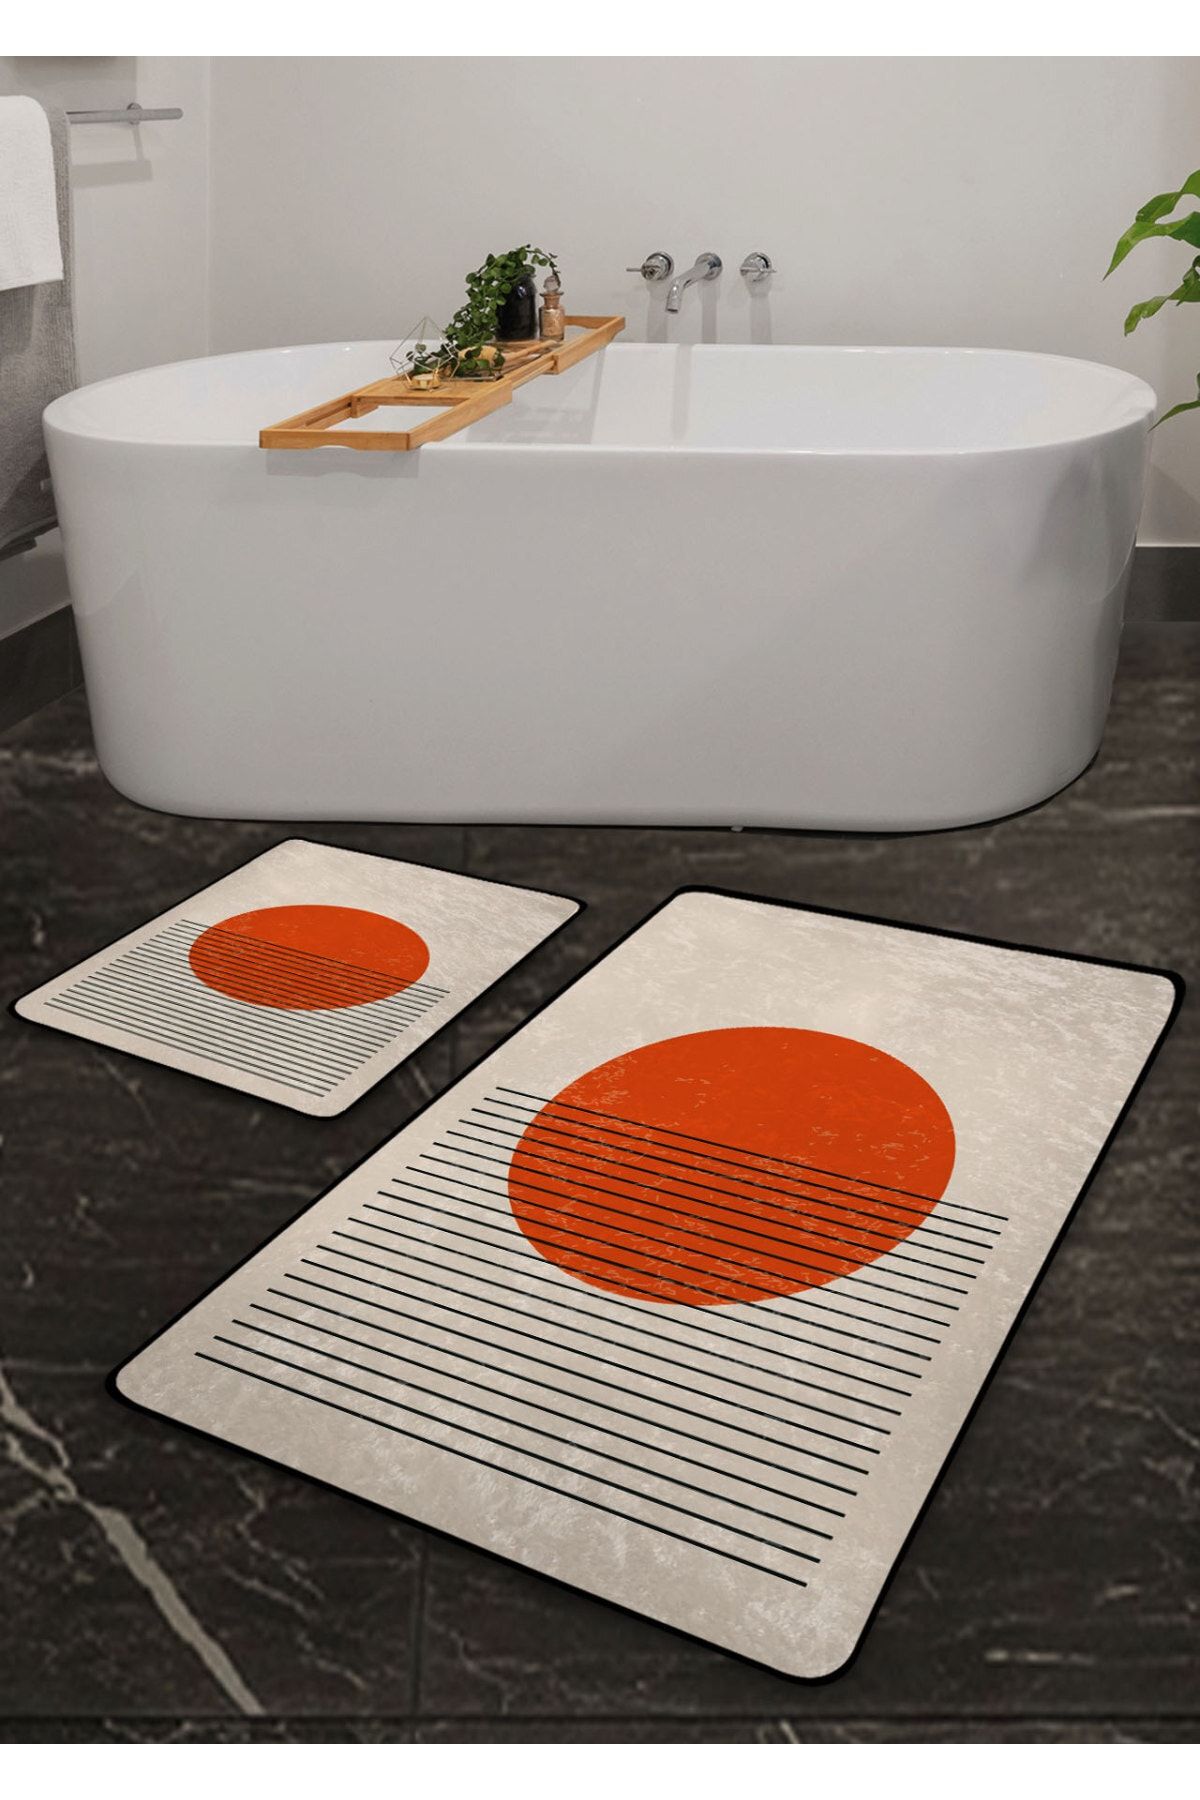 Pilloveland Kaymaz Taban Yıkanabilir 2’li Banyo Paspası - Turuncu Tablo Desenli 60*100 Cm - 50*60 Cm